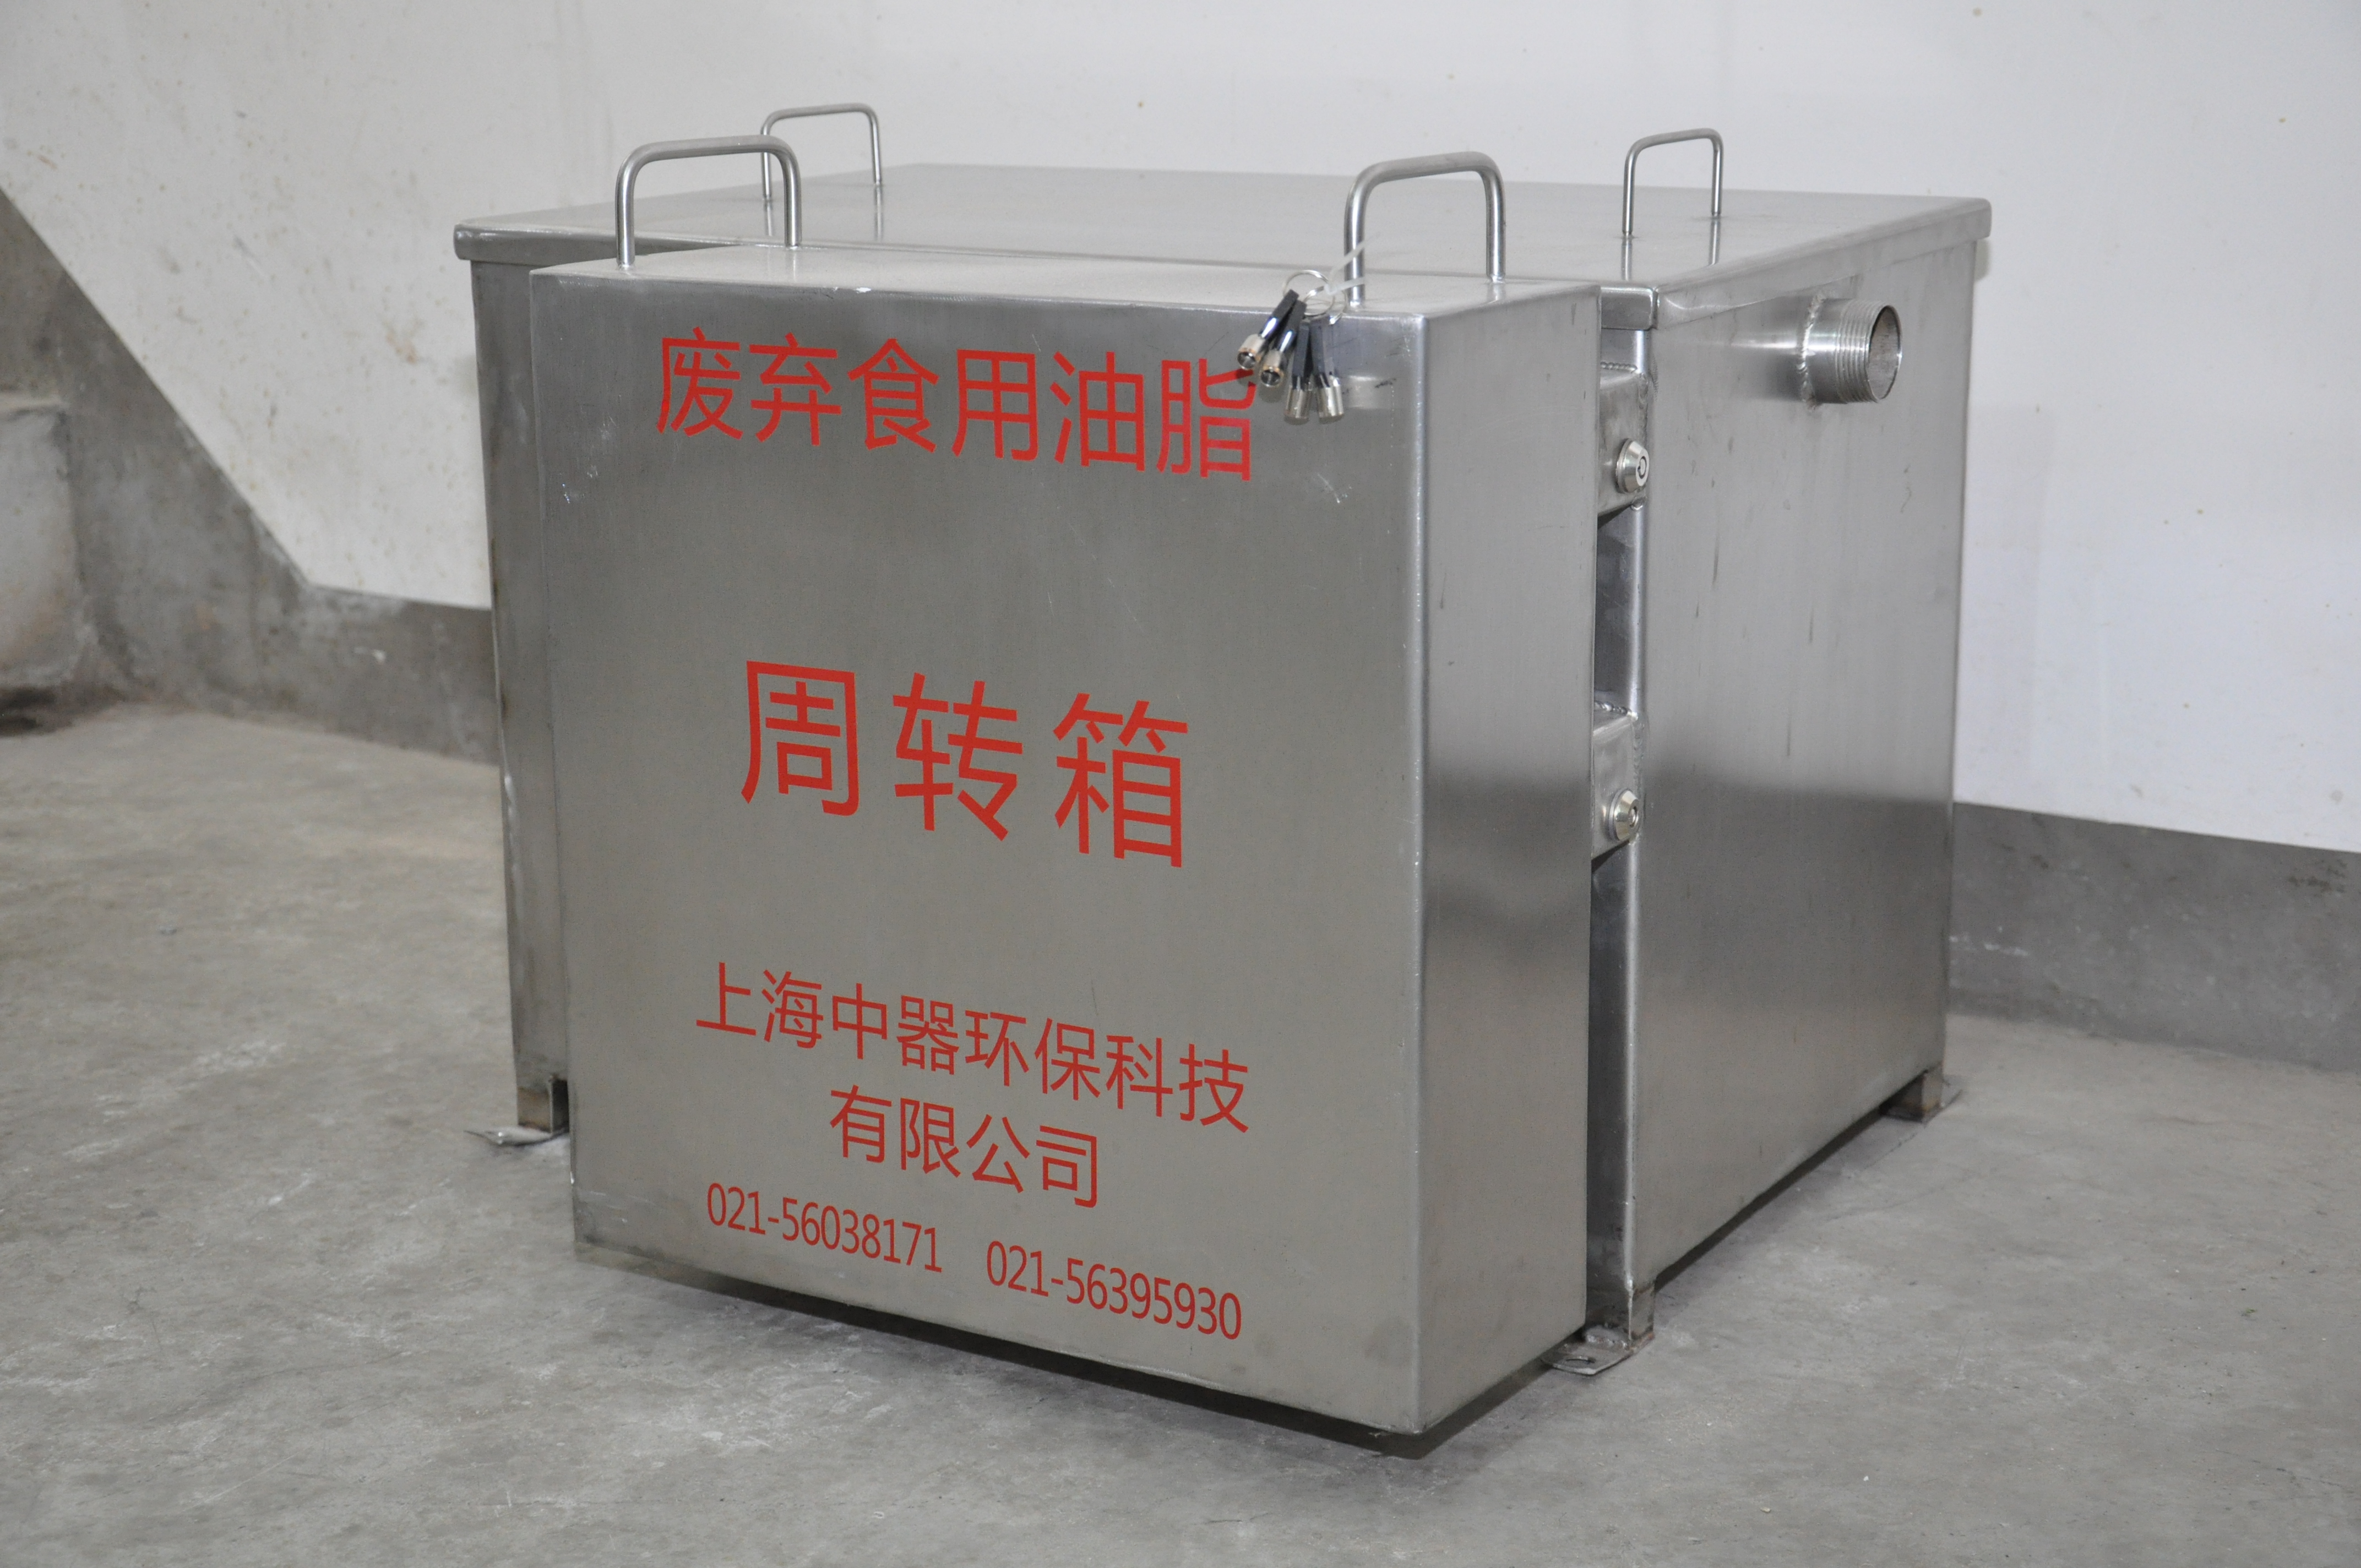 上海用于洗碗池的油水分离器设备上海用于洗碗池的油水分离器设备、生产厂家、油水分离器报价